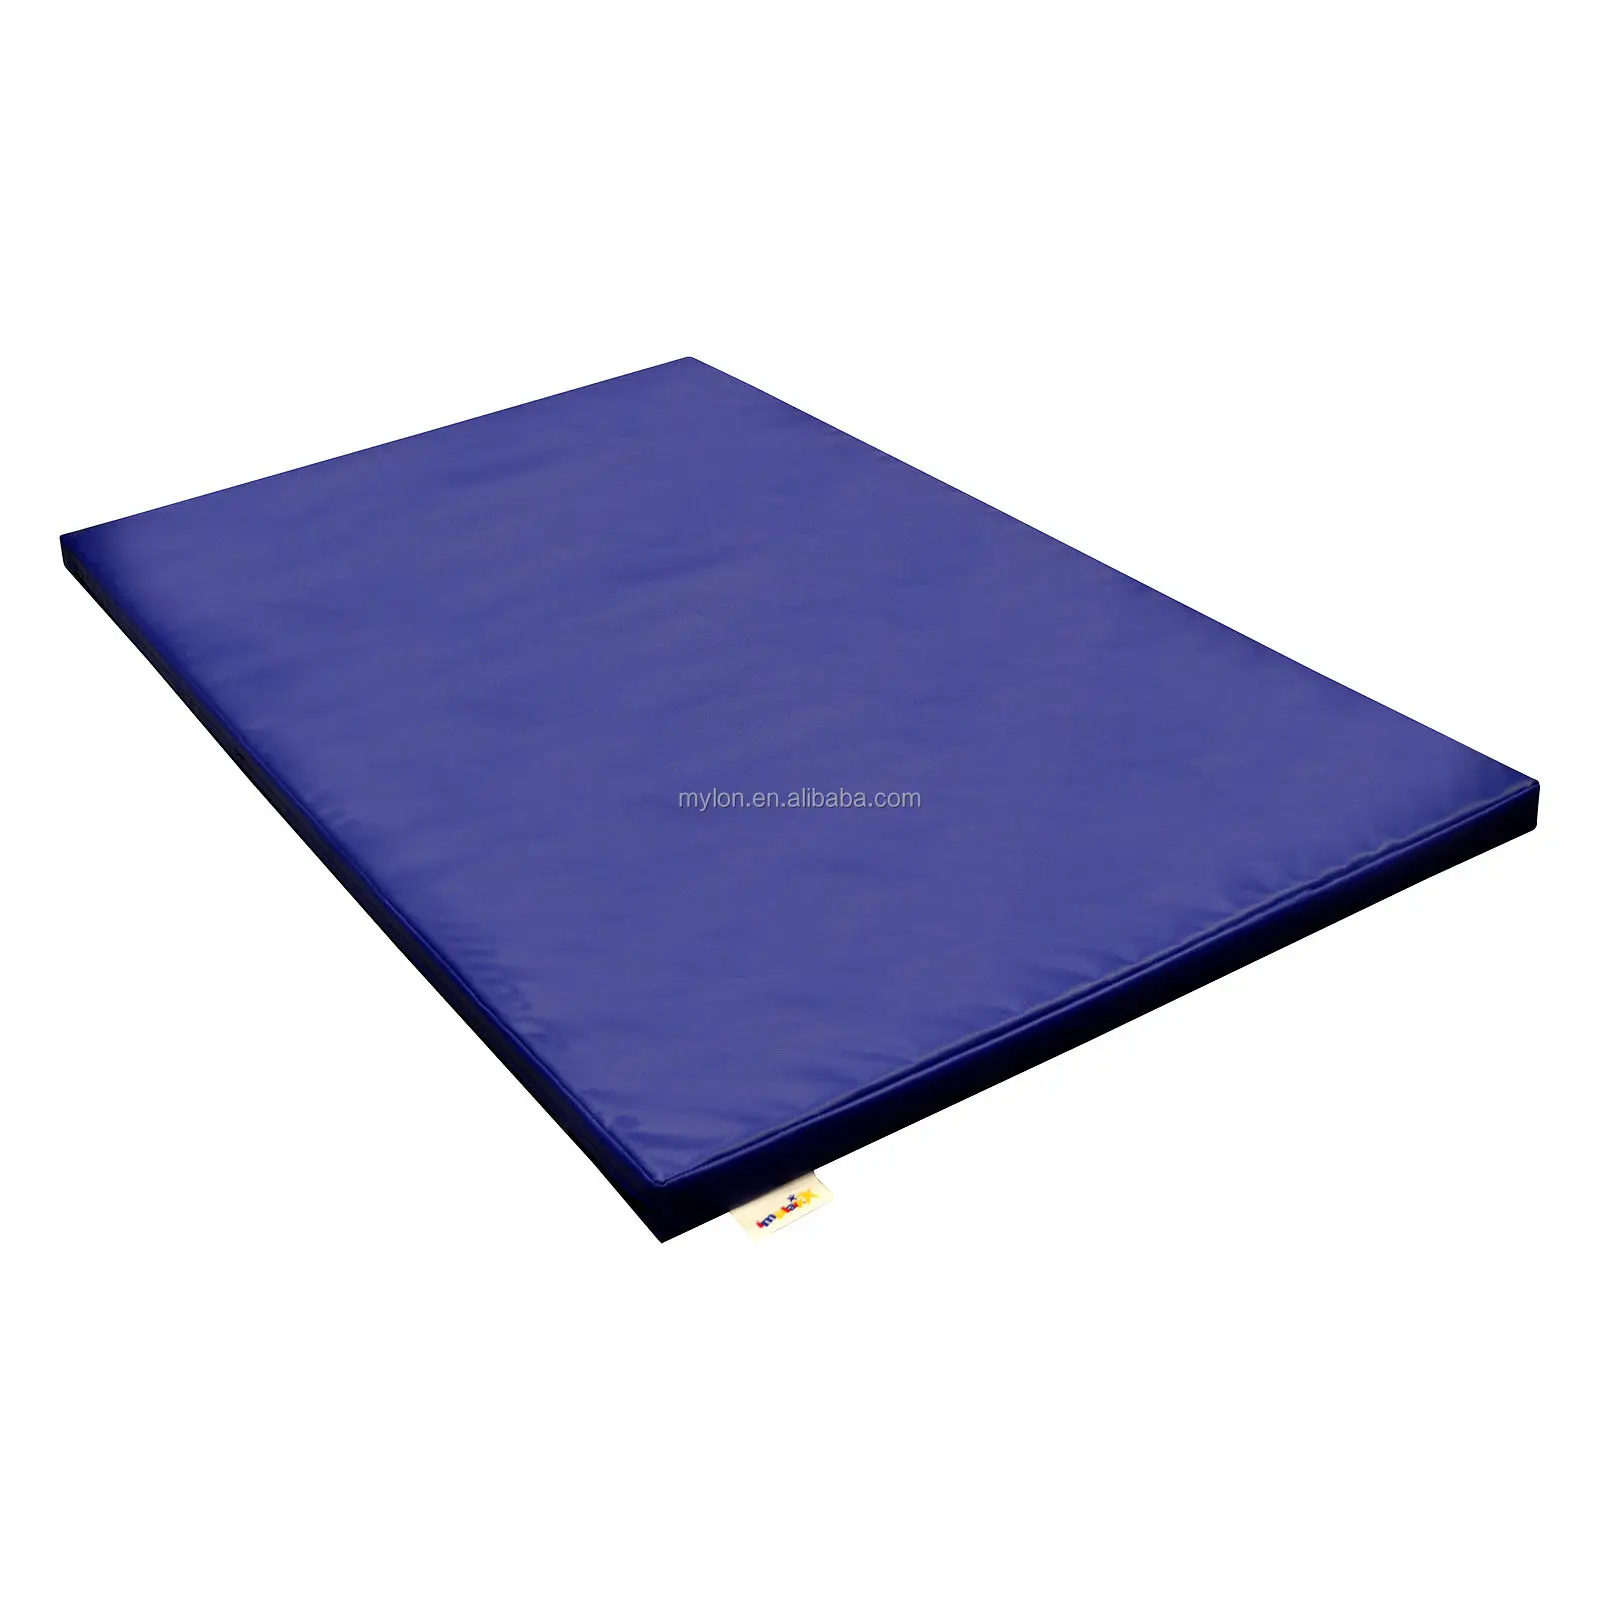 extra large gymnastics mats